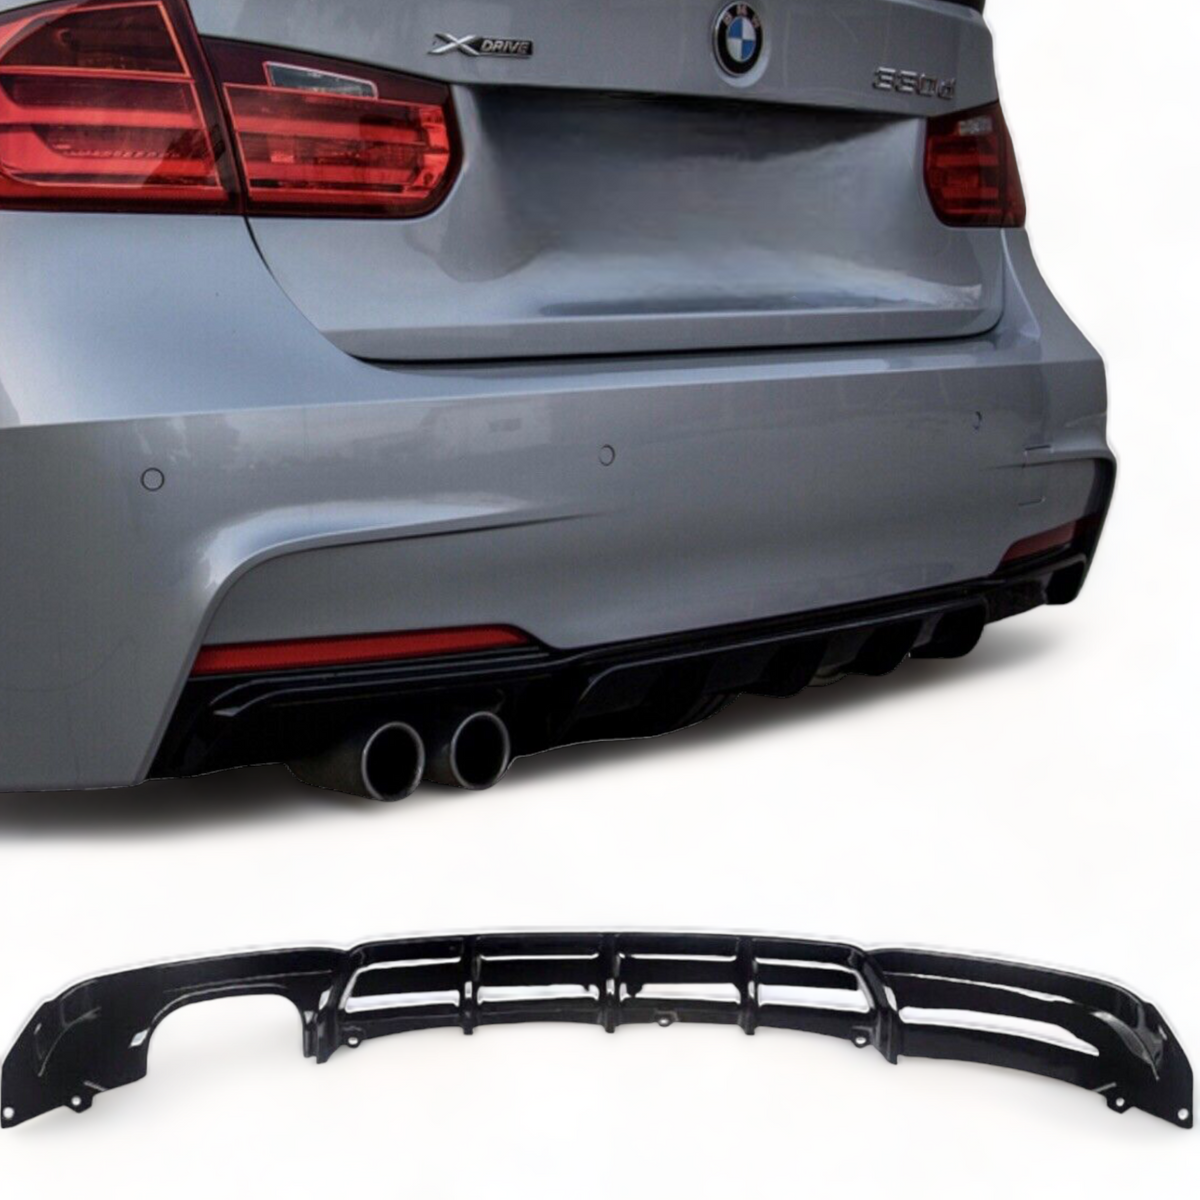 Rear Diffuser - Twin Exit - Fits BMW F30 F31 3 Series - M Sport - Gloss Black